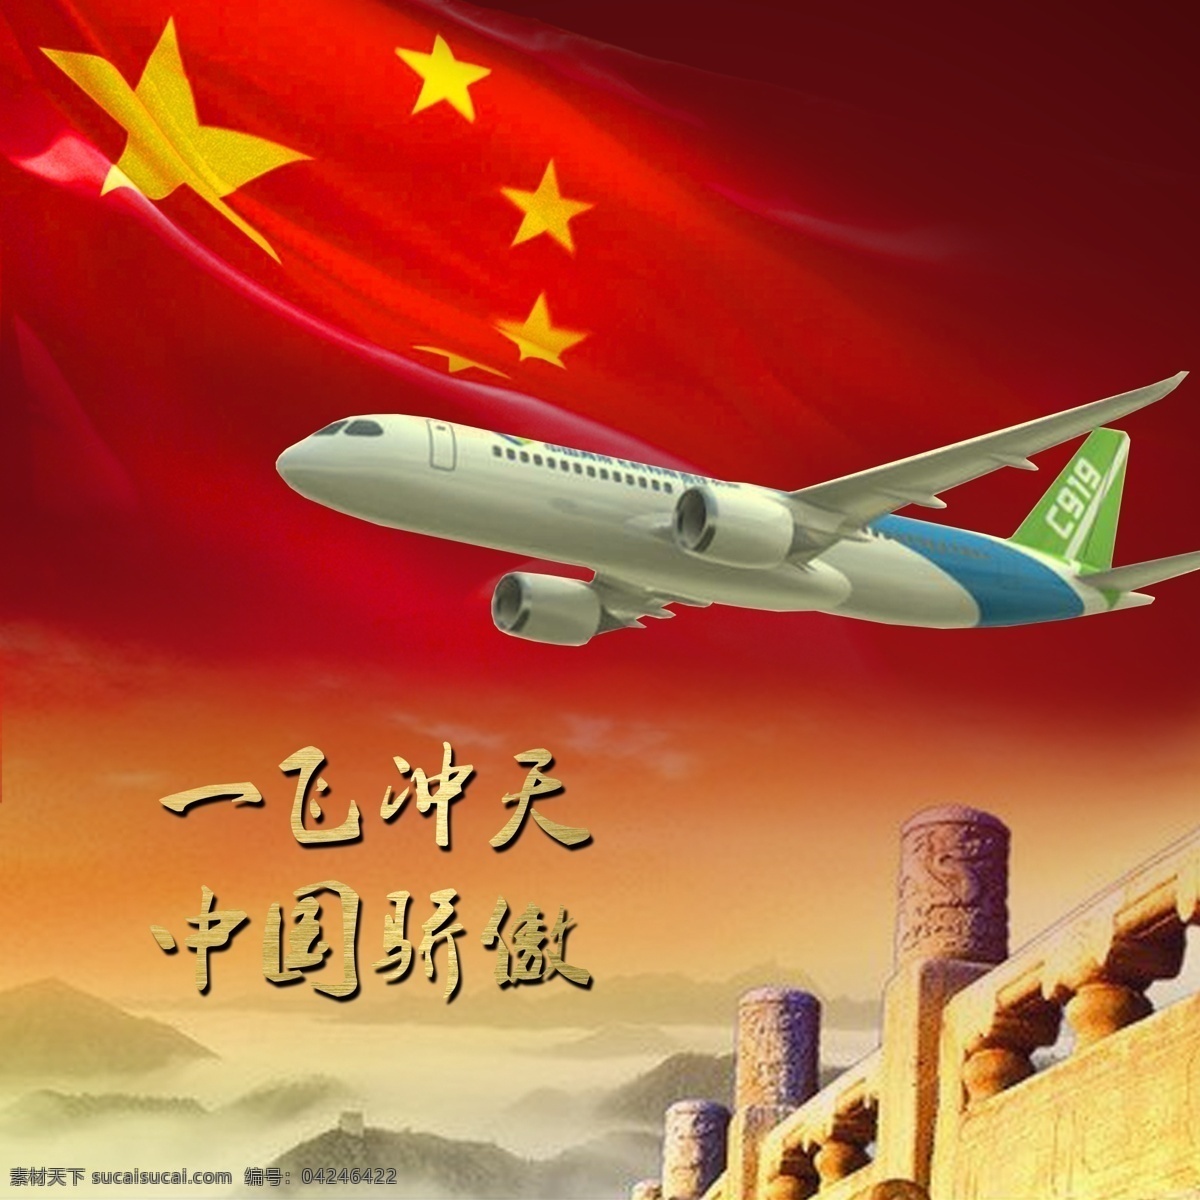 大 飞机 红色 国产 大飞机 红色背景 中国骄傲